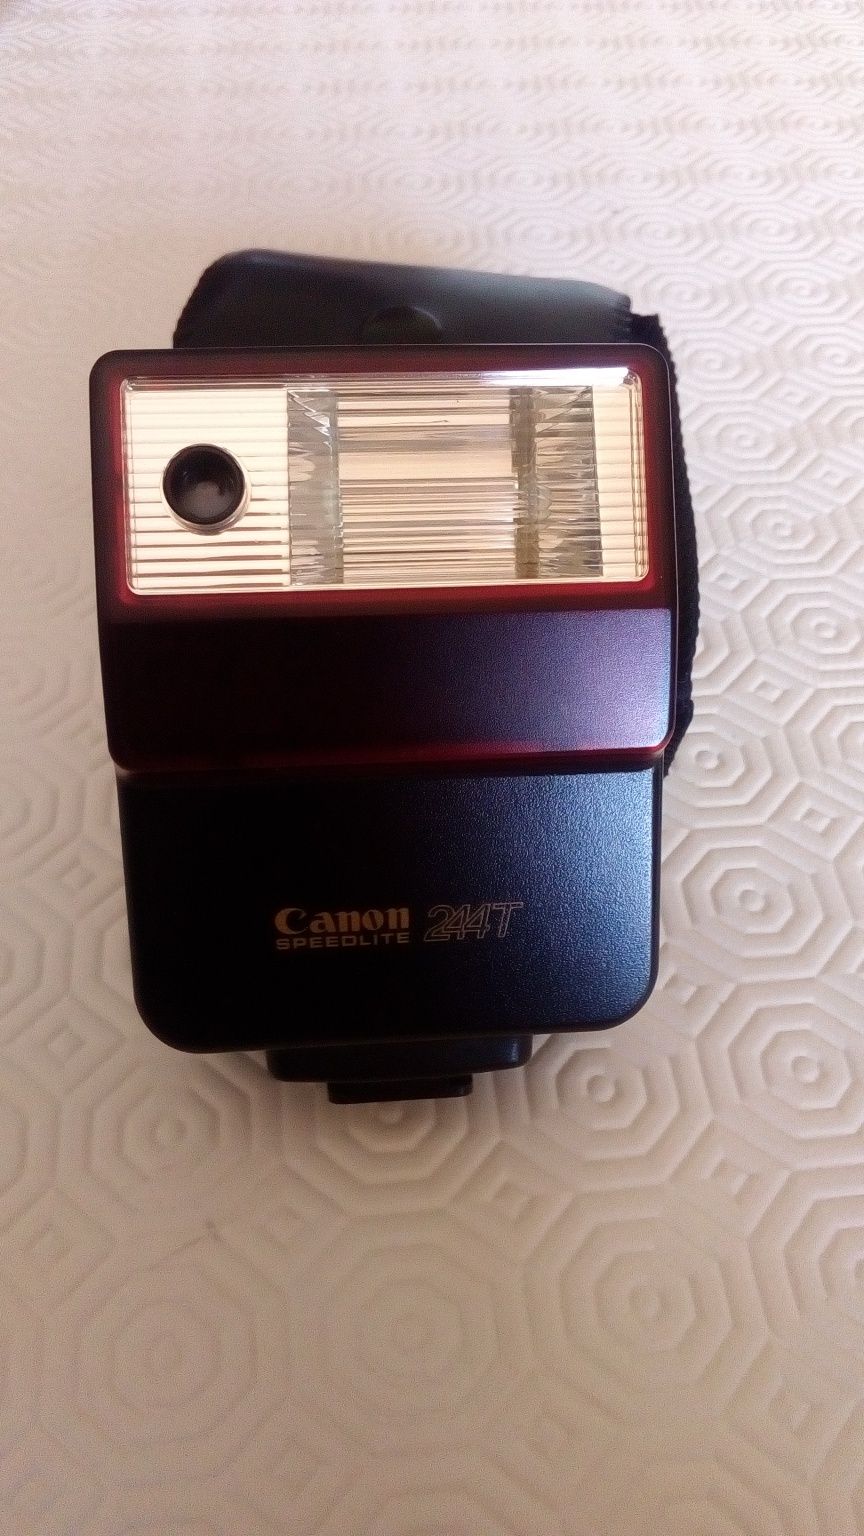 Canon Flash 244T